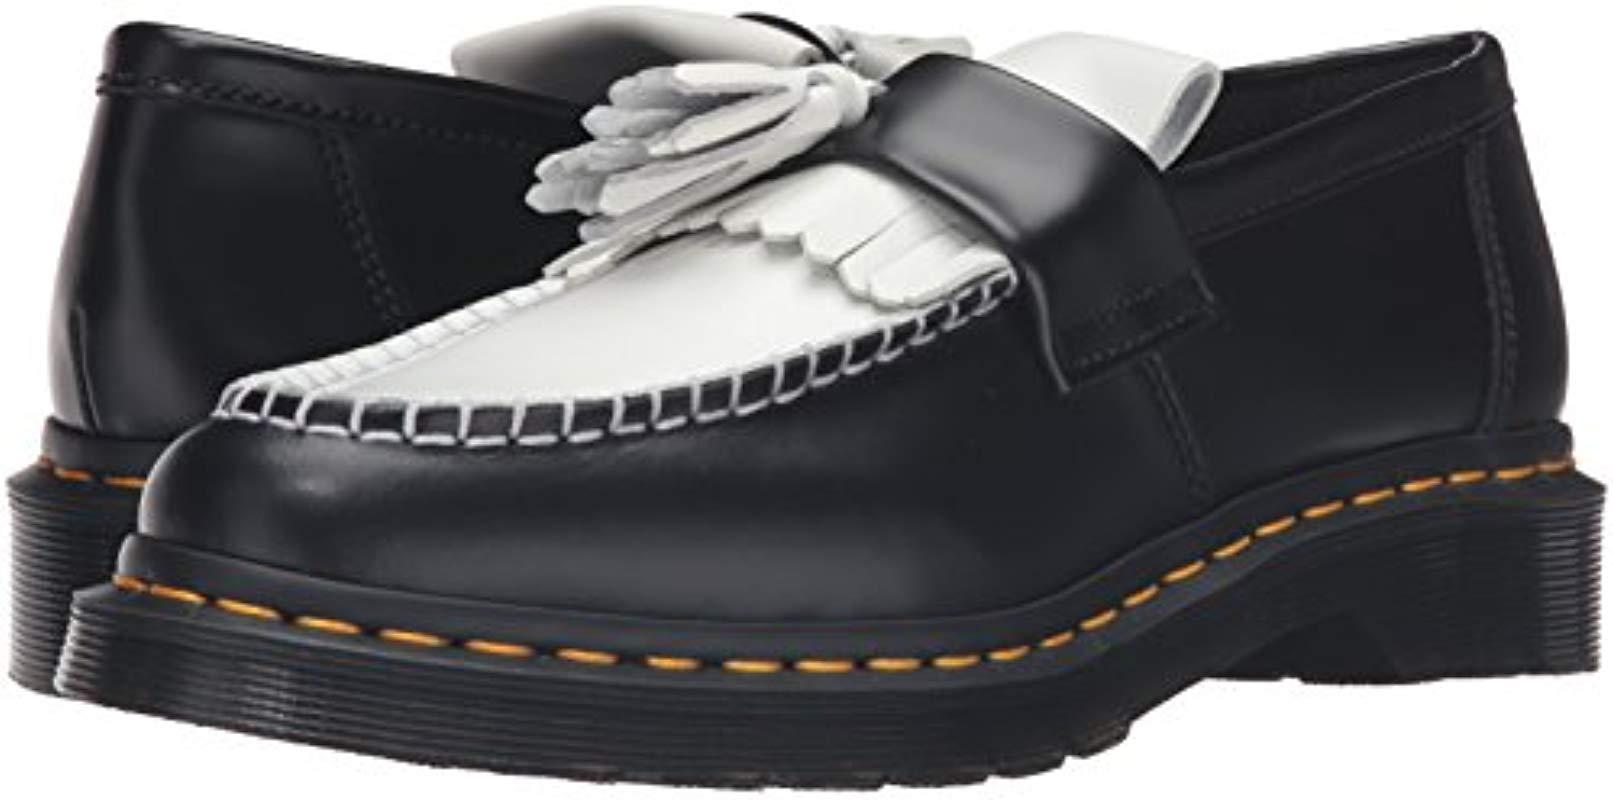 Dr. Martens Dr Martens .s Adrian Smooth Black & White Tassel Loafers, Size  6 Uk / 39 Eu | Lyst UK